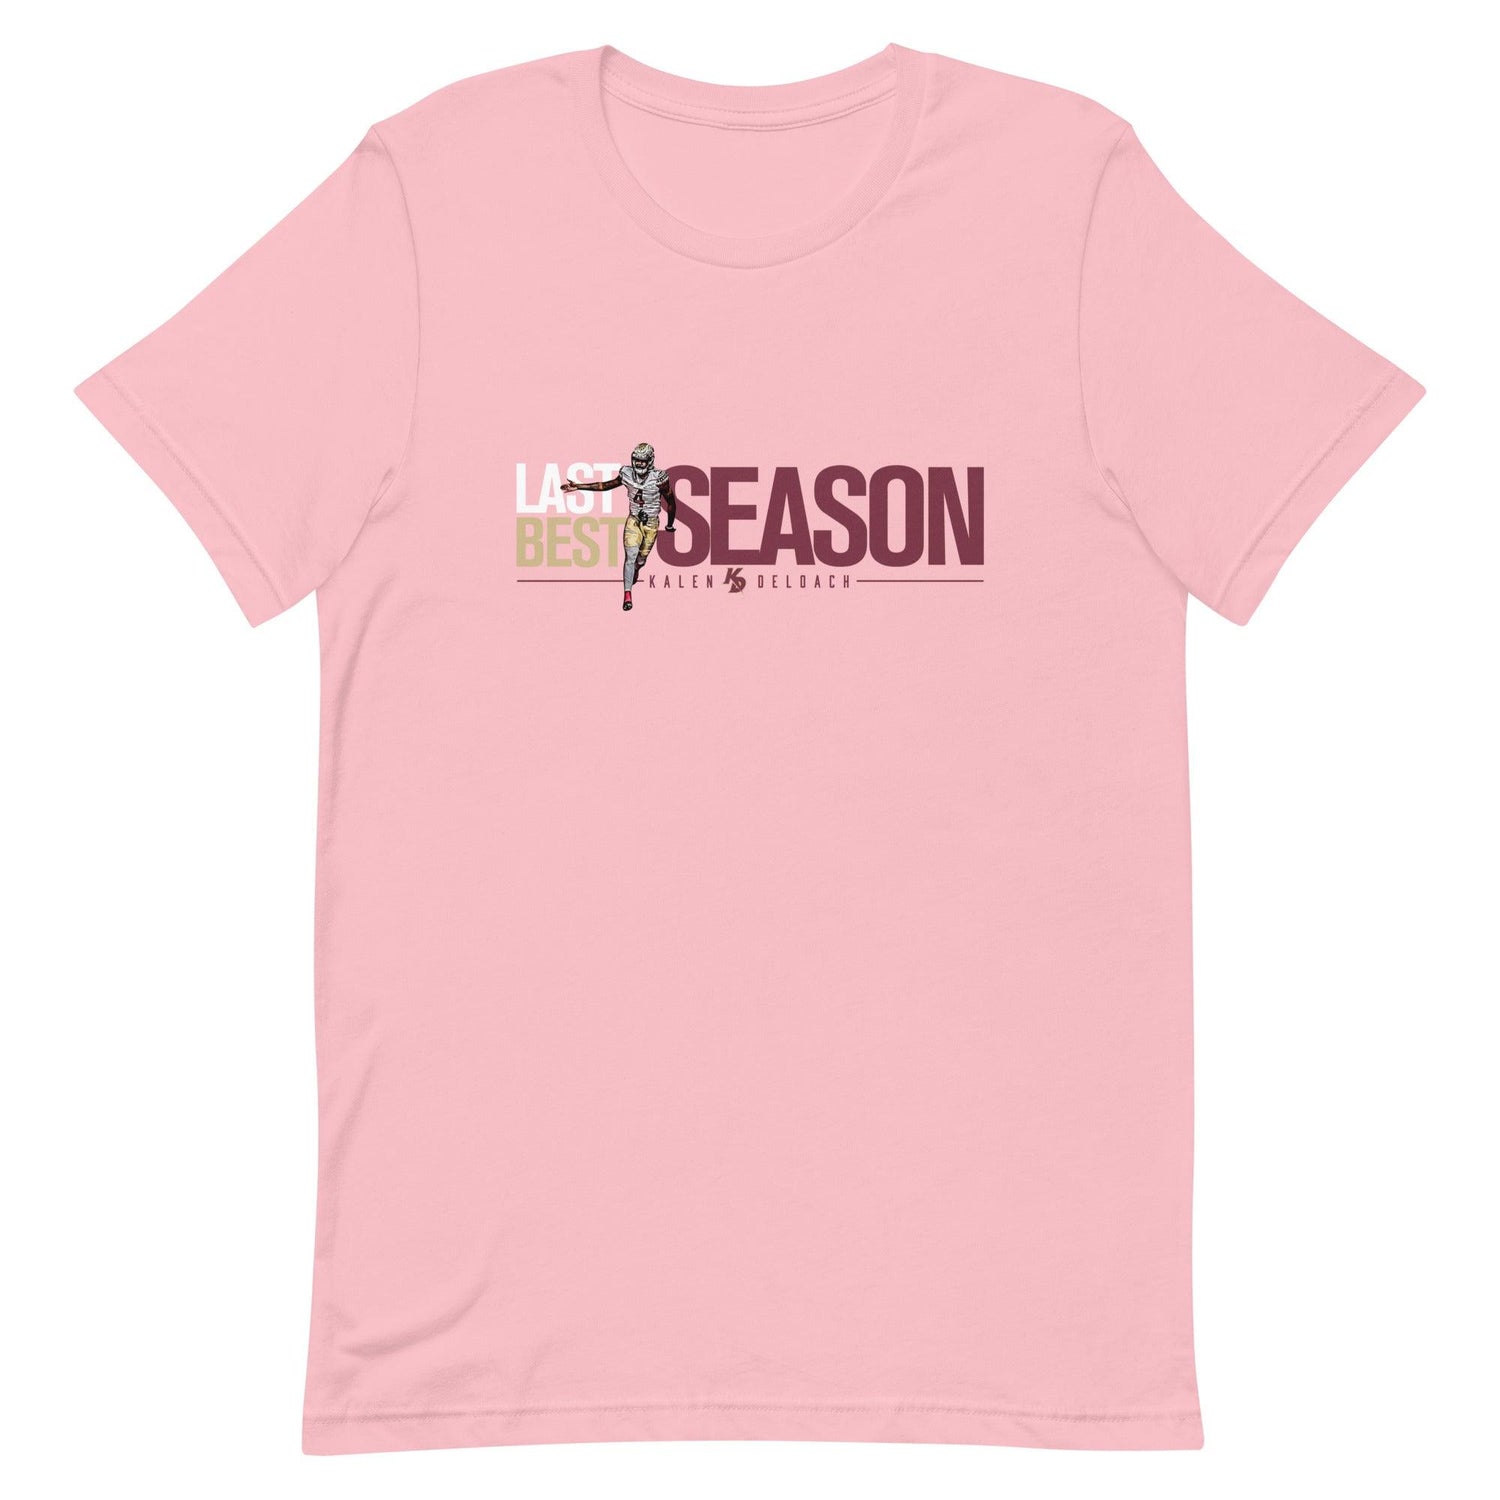 Kalen Deloach "Last Season Best Season" t-shirt - Fan Arch